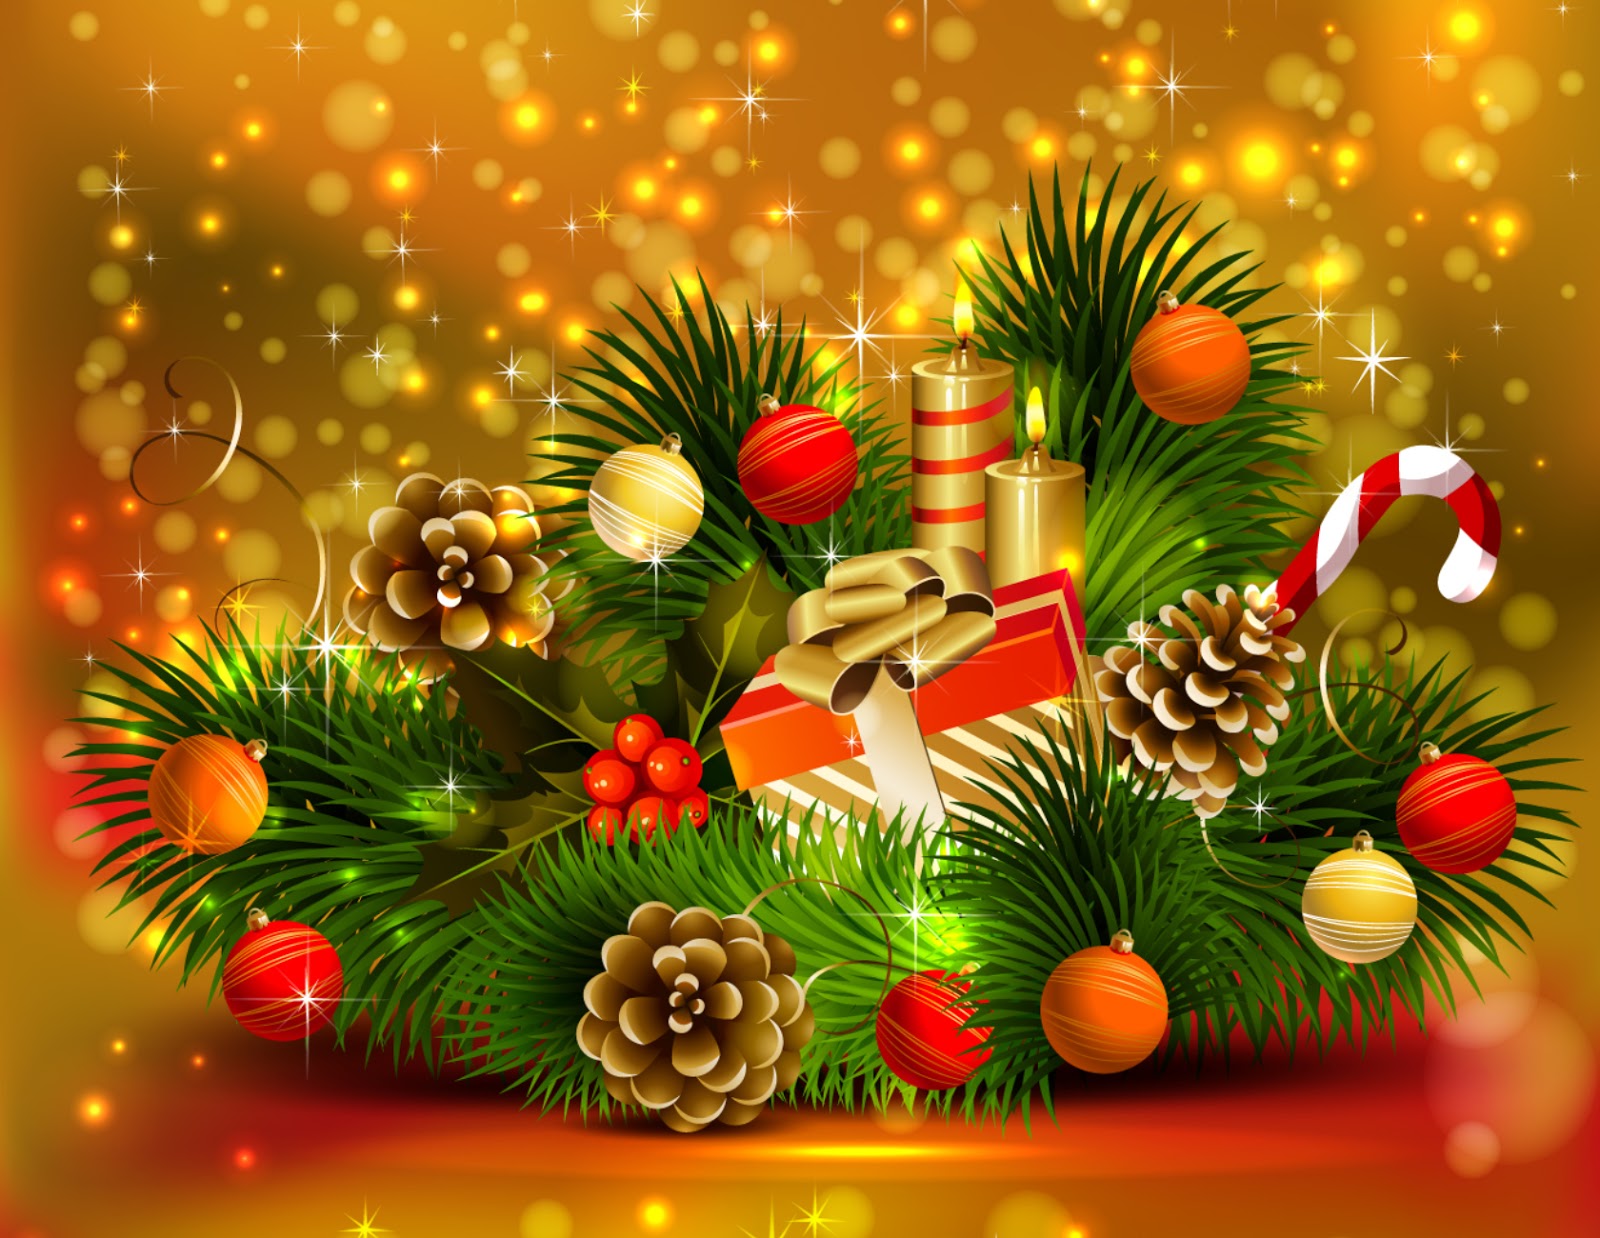 Merry-Christmas-christmas-32790344-1680-1300.jpg